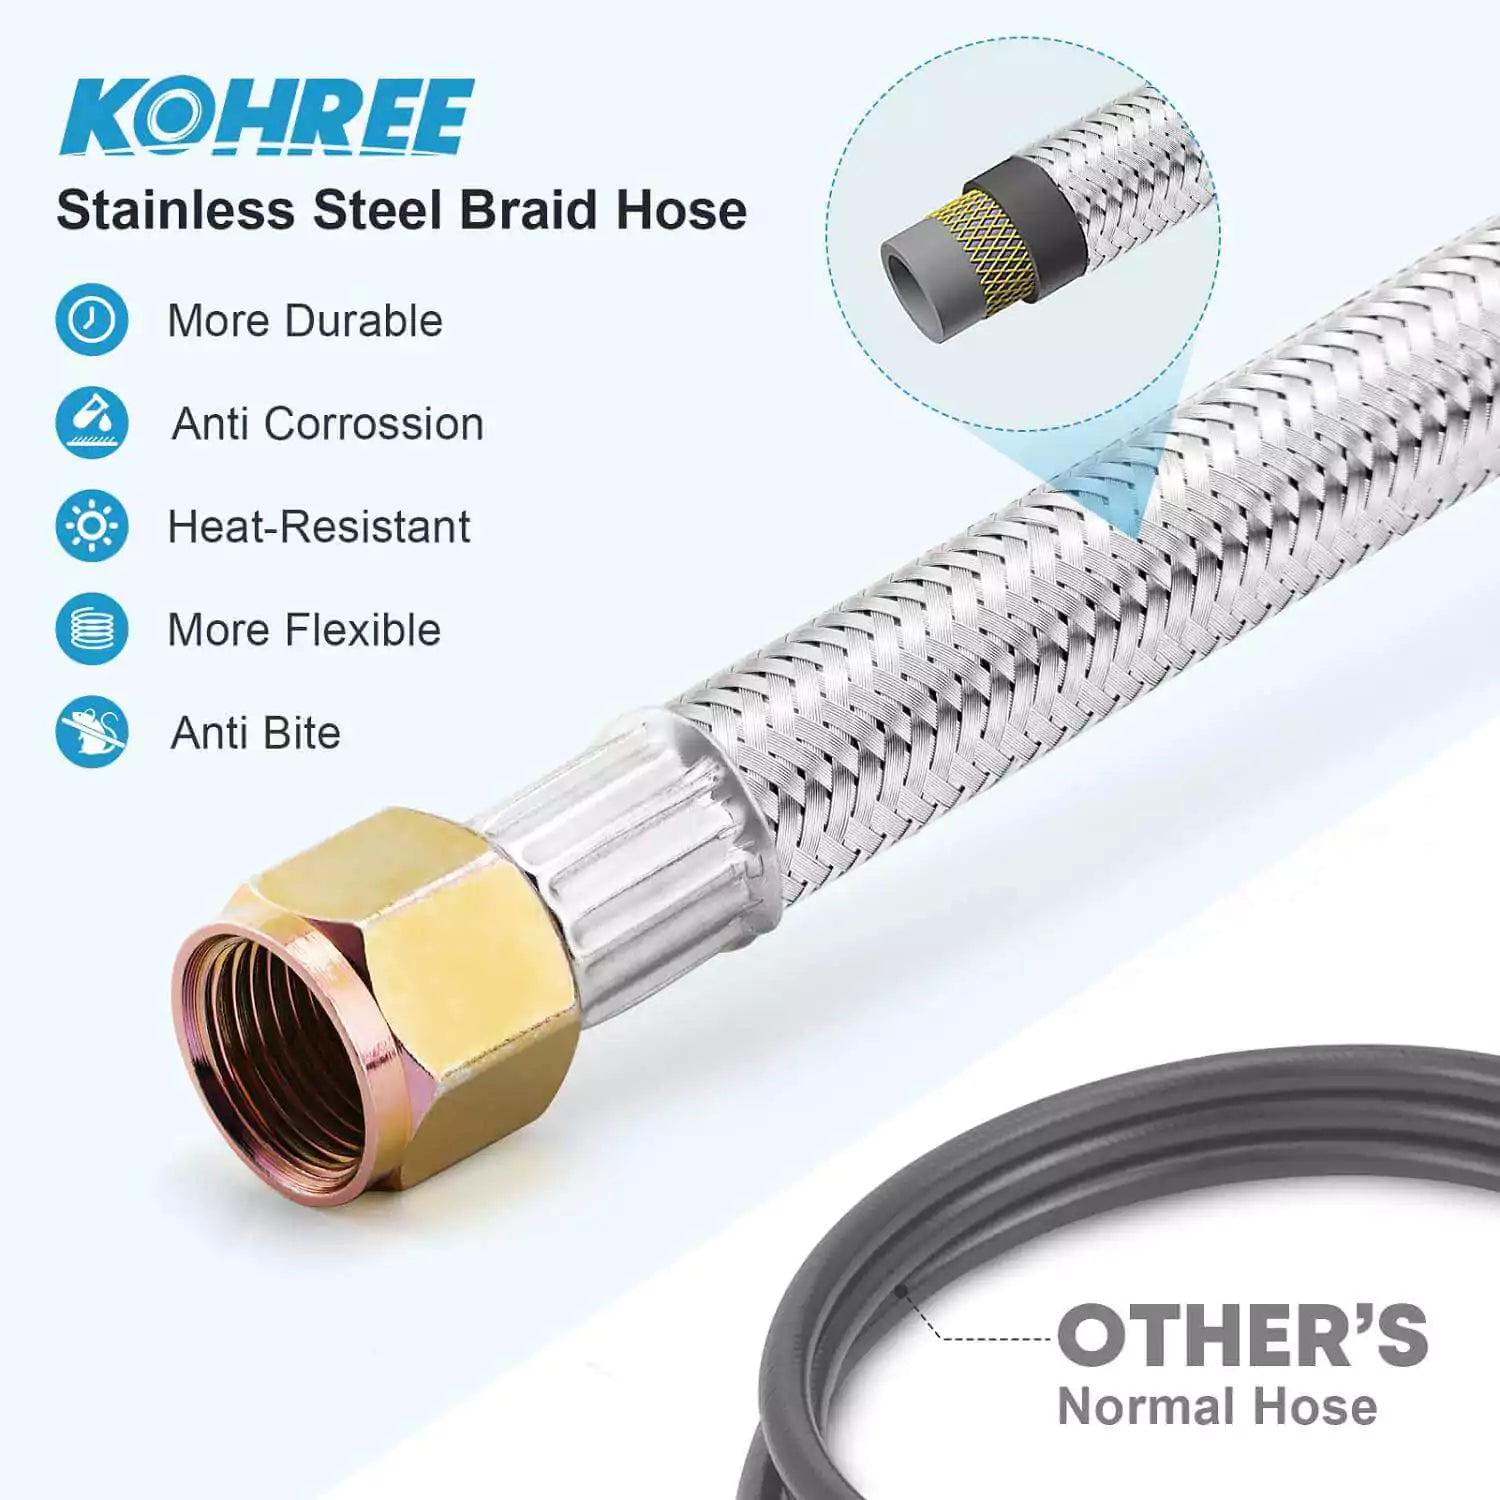 Kohree stainless steel braid hose